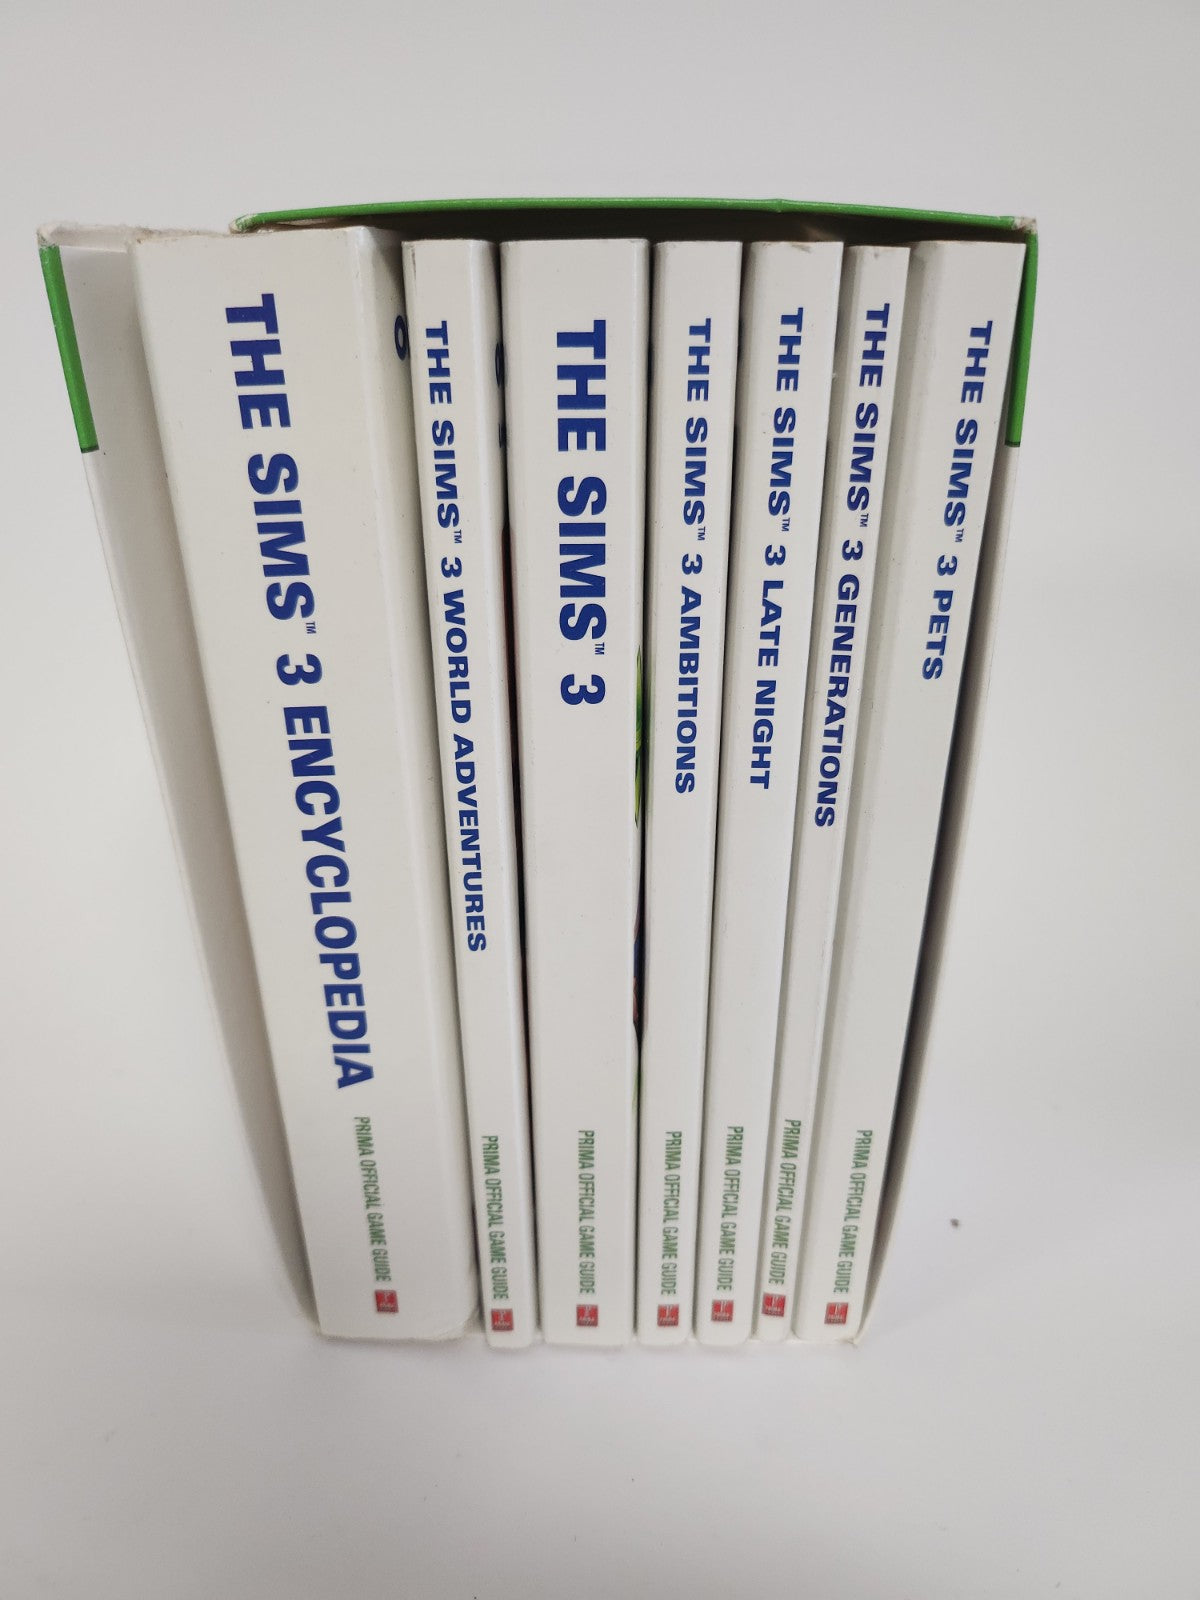 Die Sims 3 (7 vollständige Anleitungen) Englisch